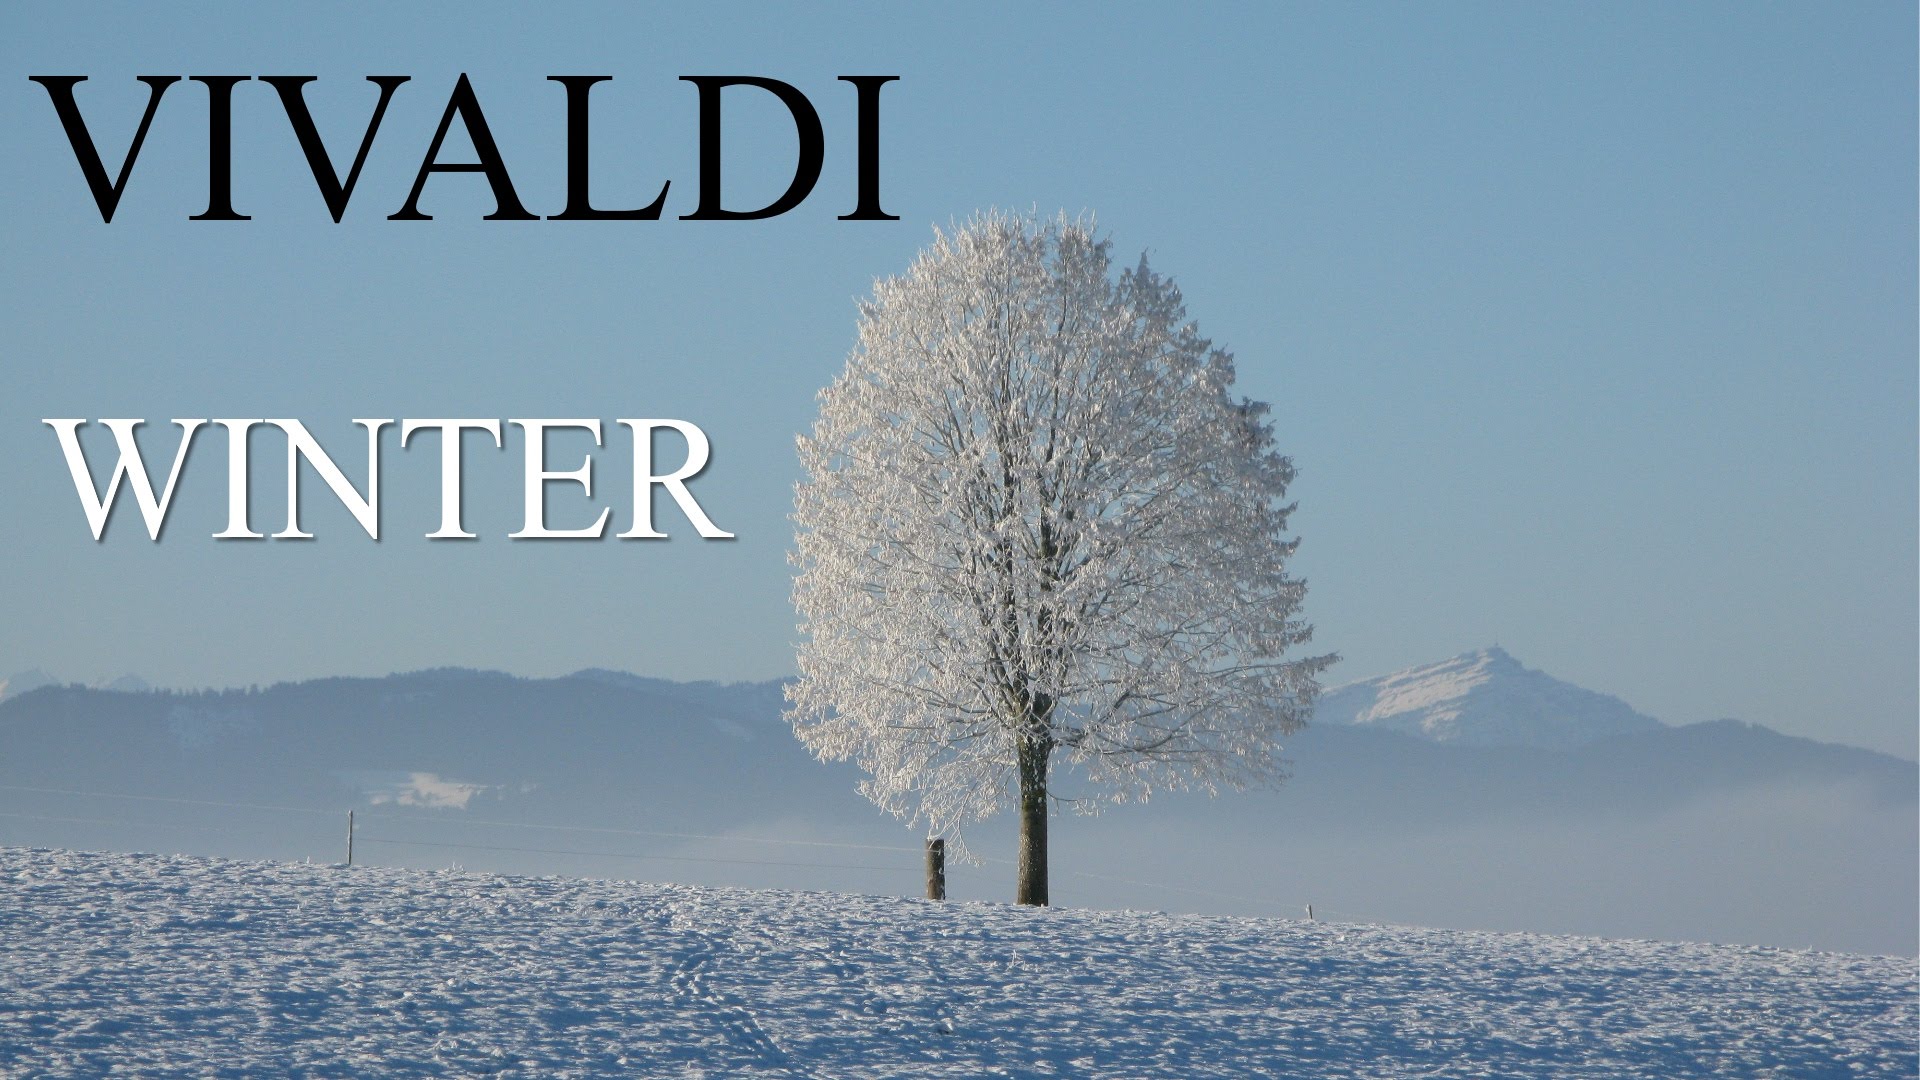 Времена года в обработке слушать. Антонио Вивальди зима. Вивальди времена года зима. Зима в произведении Антонио Вивальди. Антонио Вивальди концерт зима.